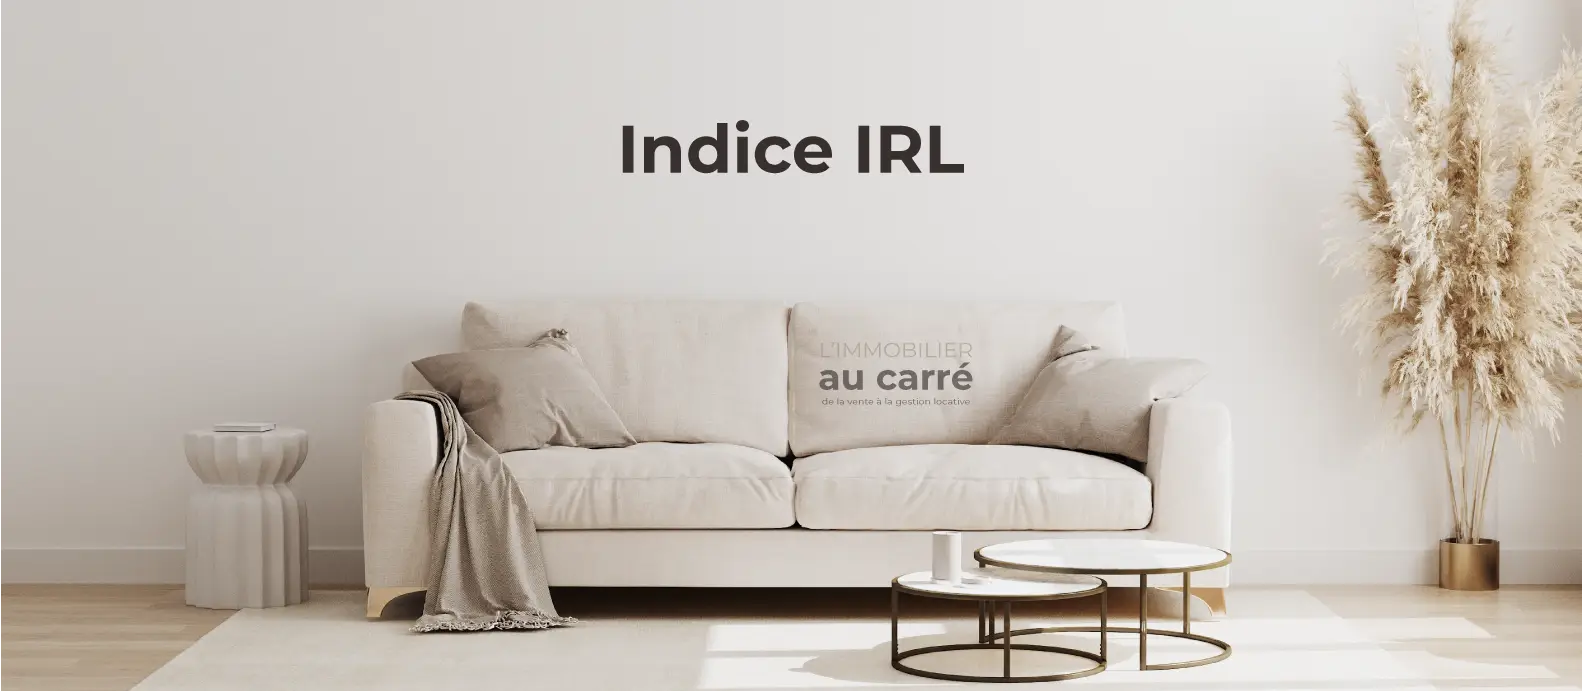 Indice IRL